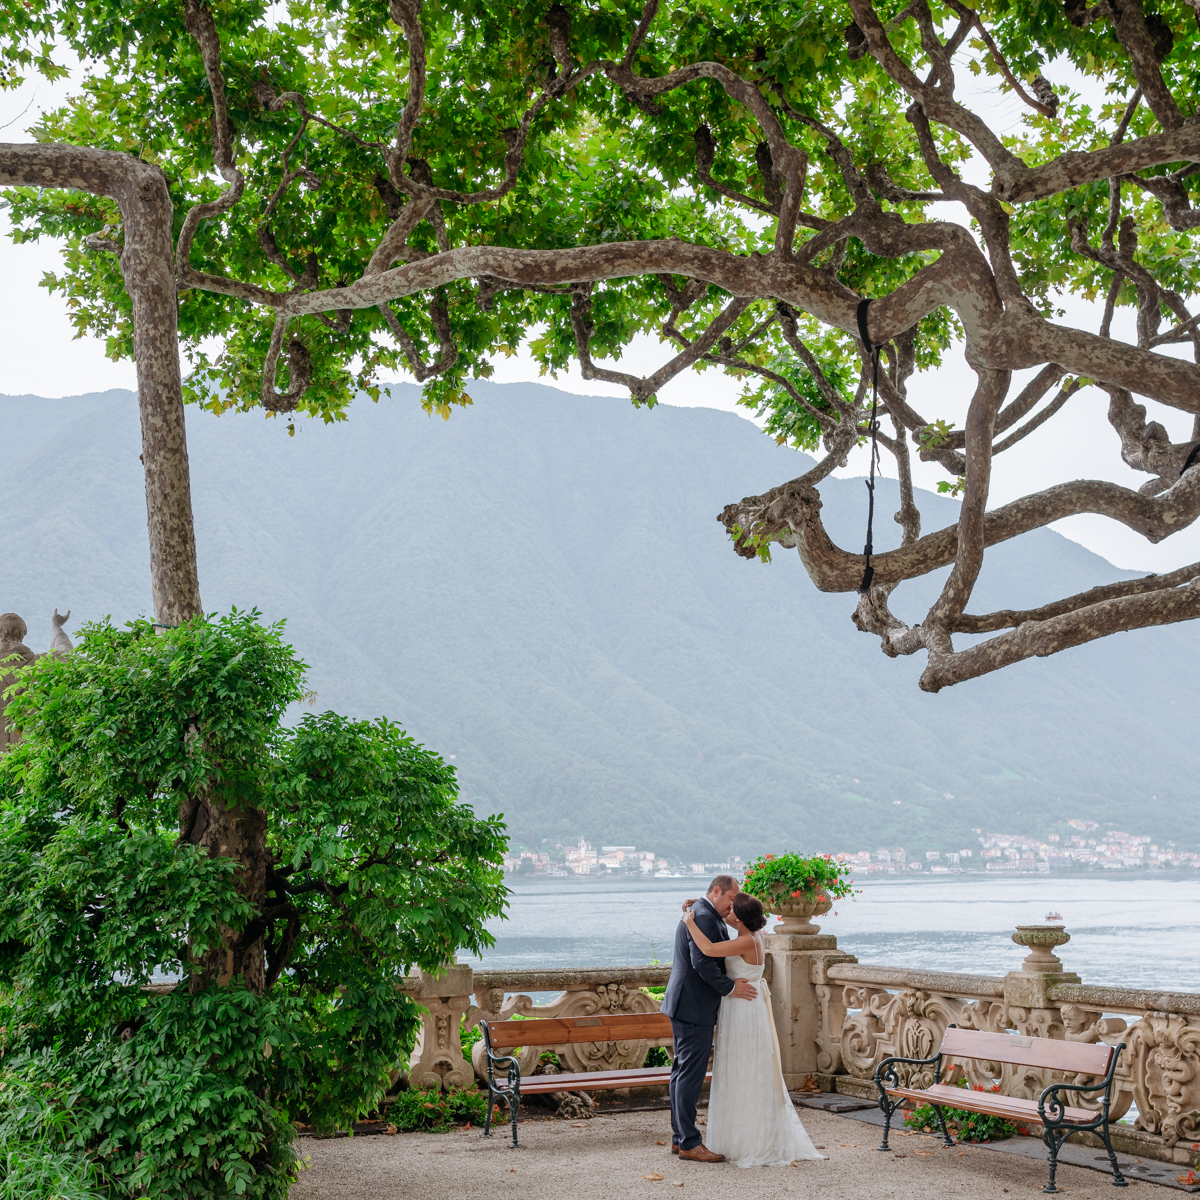 Villa Balbianello Lake Como wedding photographer and videographer